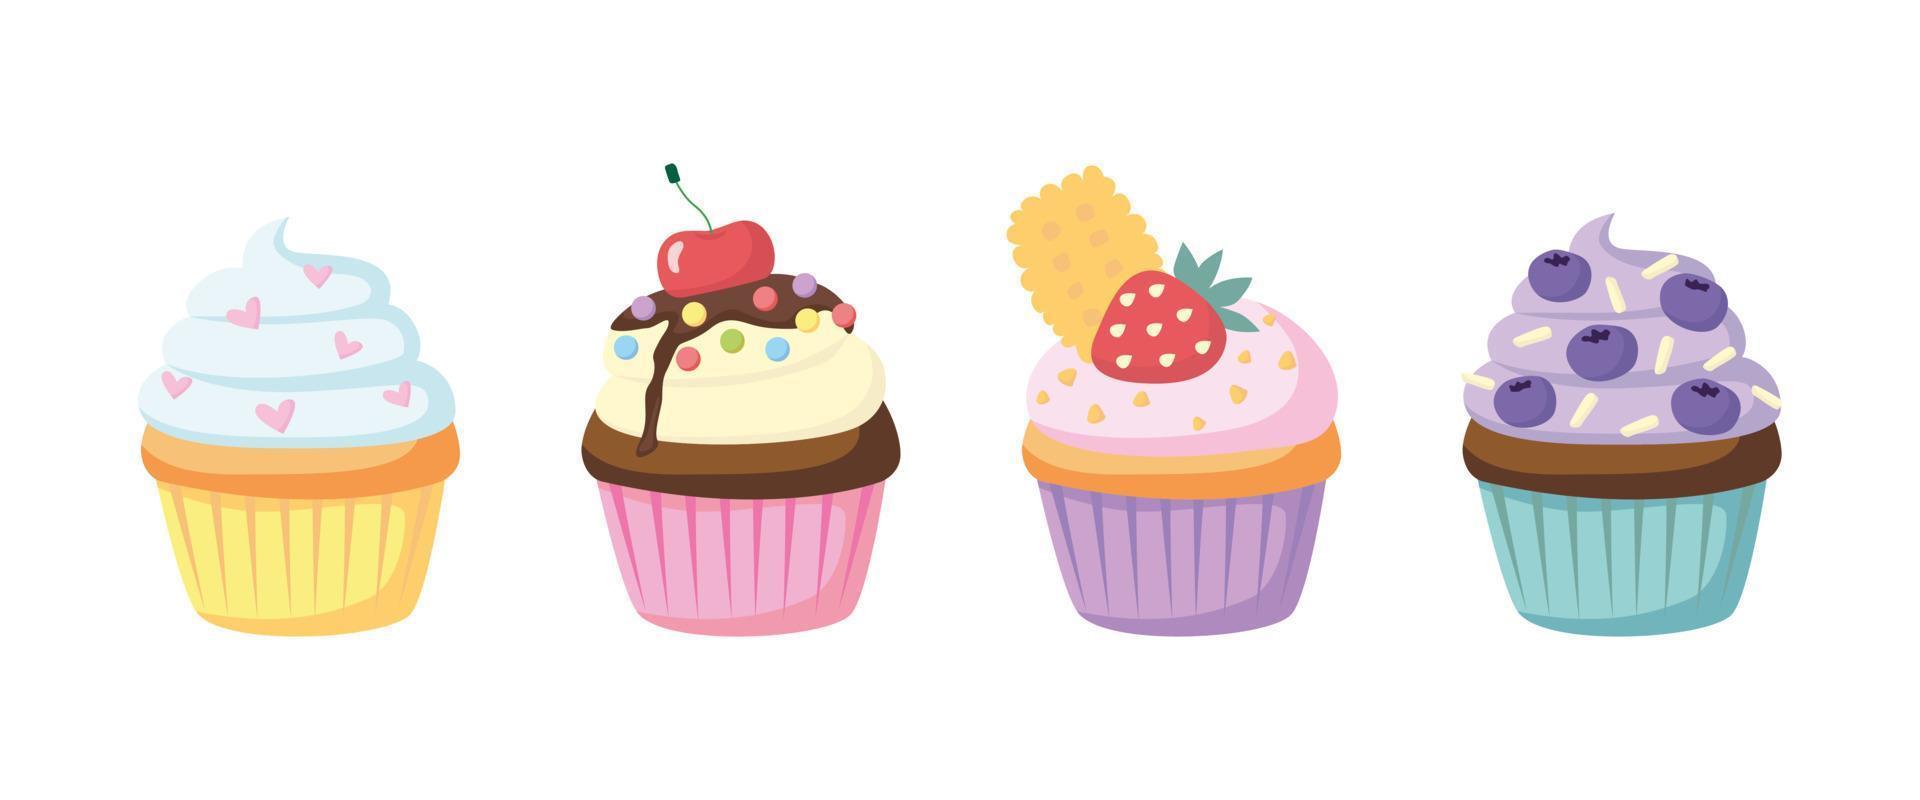 Set aus verschiedenen Cupcakes in Cupcake-Papier. Sahnegebäck mit Beeren, Pulver, Kekse. süße Zuckerdesserts. Bäckerei, Dessert, süße Produkte, Kochen, Teeparty. handgezeichneter flacher Cupcake vektor